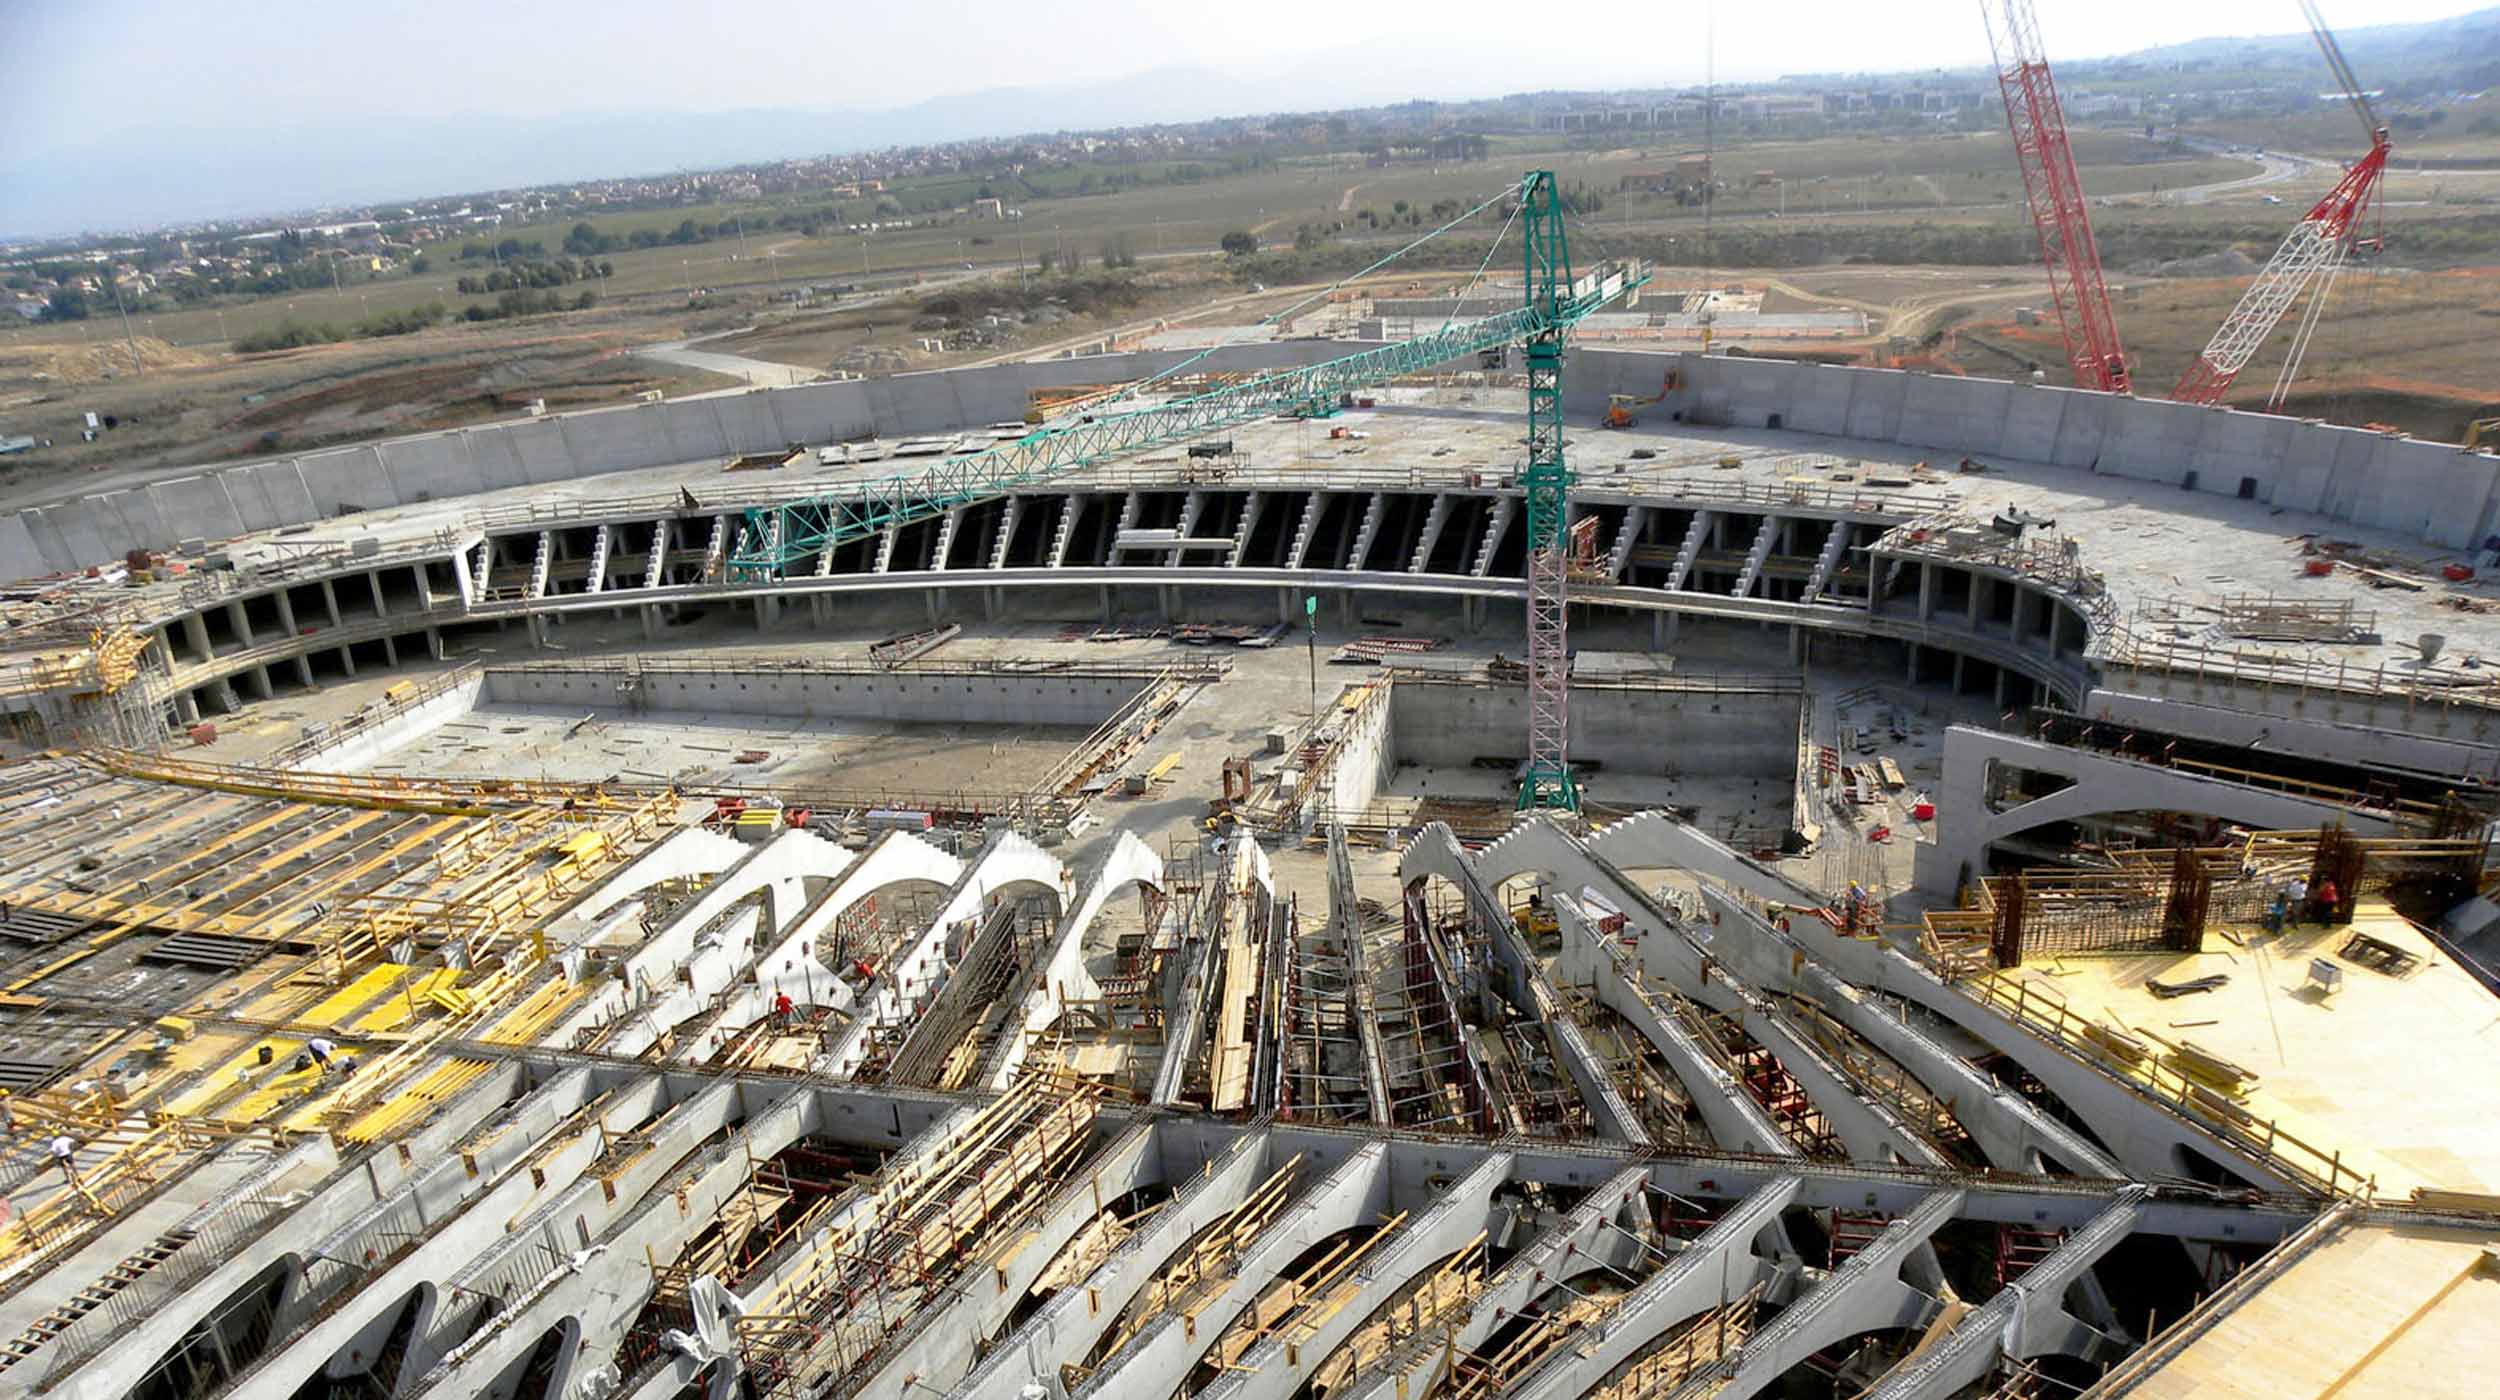 Projetado pelo arquiteto Santiago Calatrava, o “Città dello Sport” inclui campos de futebol, o novo “Palácio do Esporte”, o estádio de natação e o reitor da Universidade de Tor Vergata.